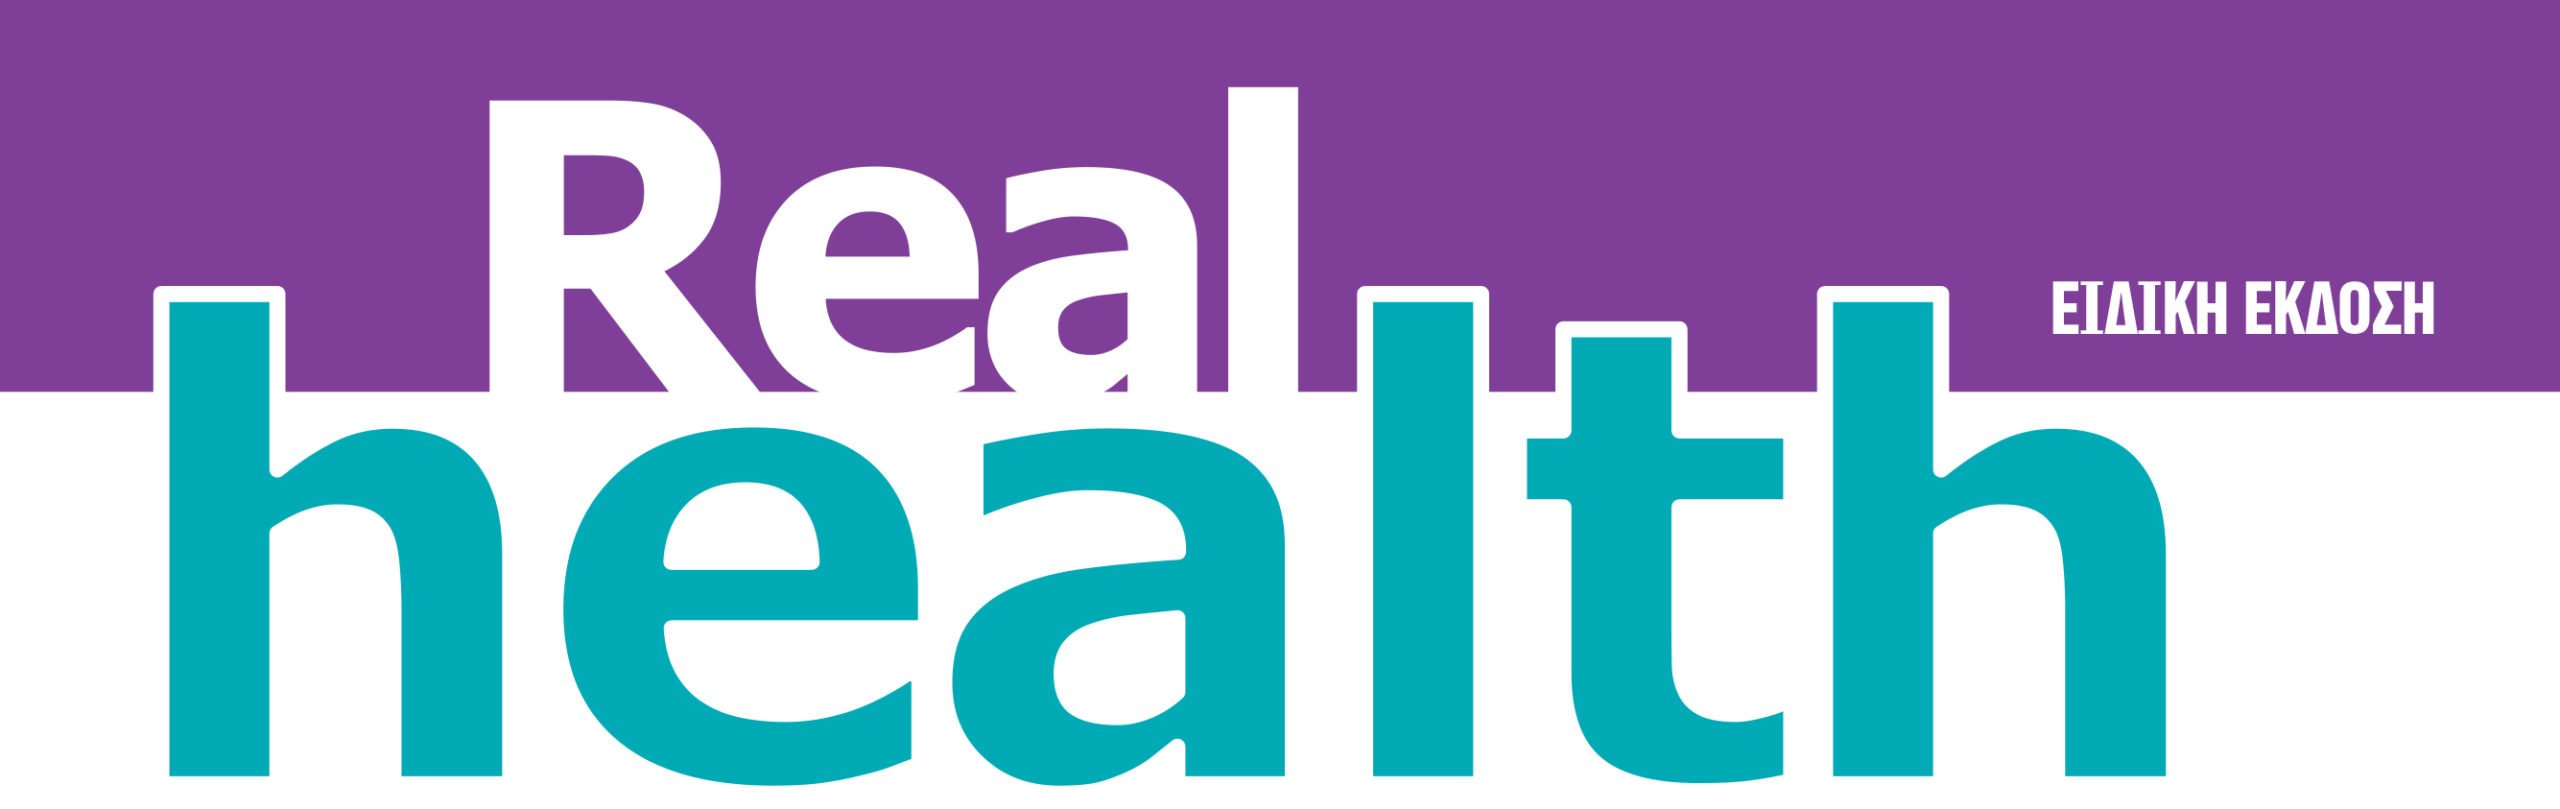 Η ειδική έκδοση Real health σήμερα με τη Realnews